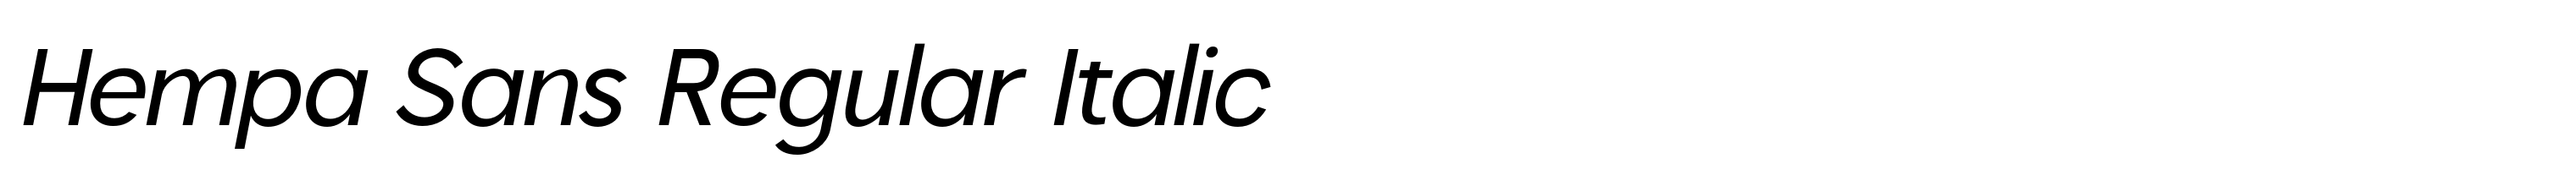 Hempa Sans Regular Italic